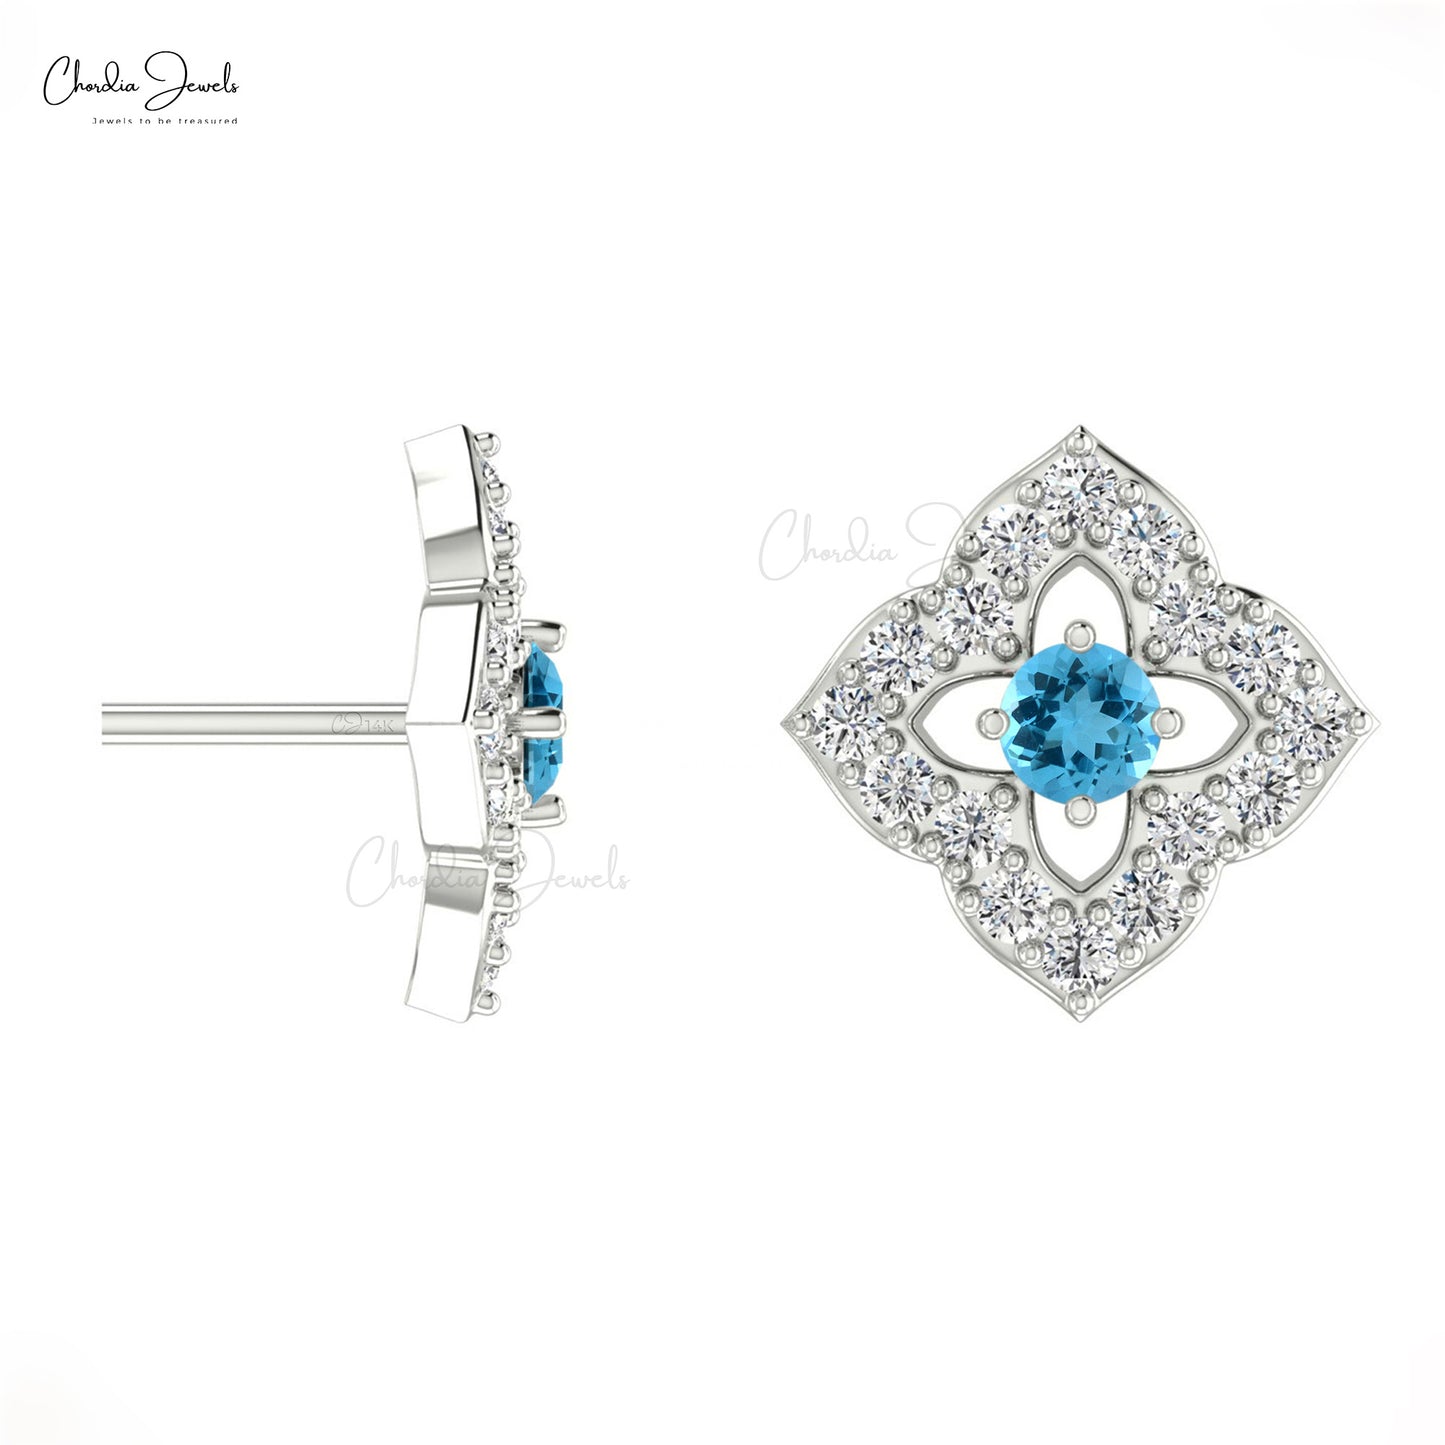 2MM Round Cut Swiss Blue Topaz & Diamond Stud Earrings For Woman